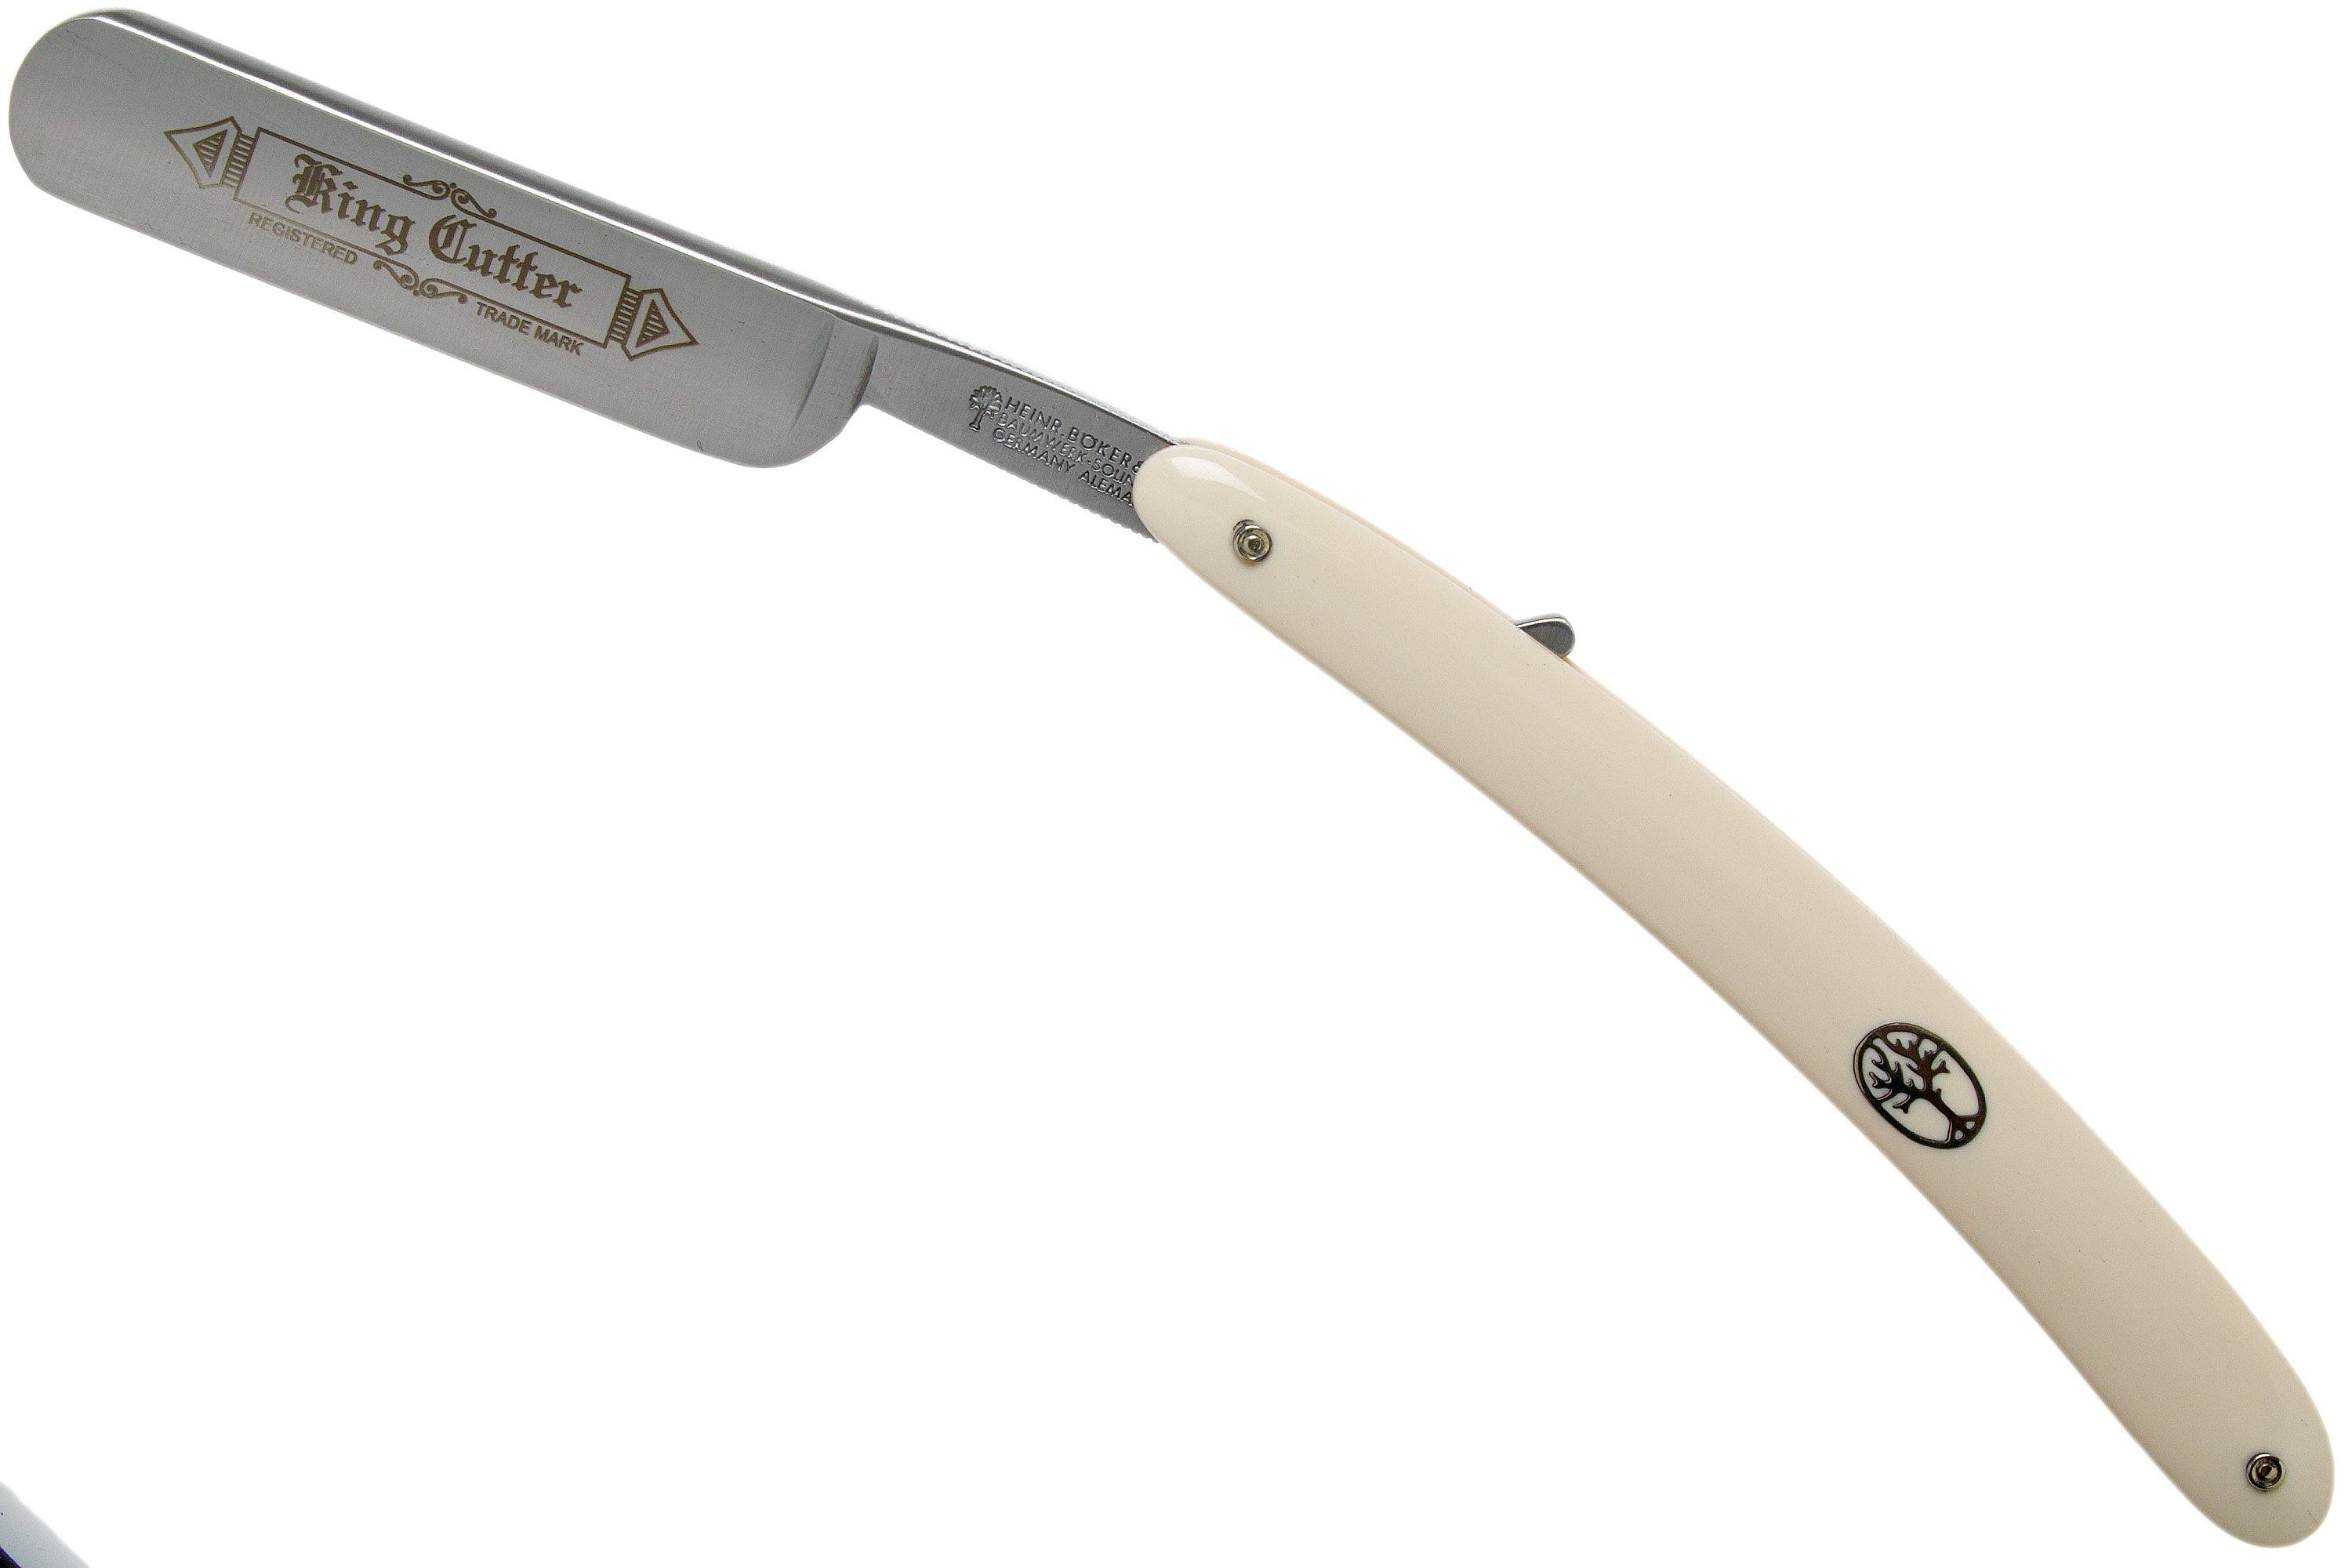 Gerber Prybrid Utility Solid State 31-003746 Grey pocket knife